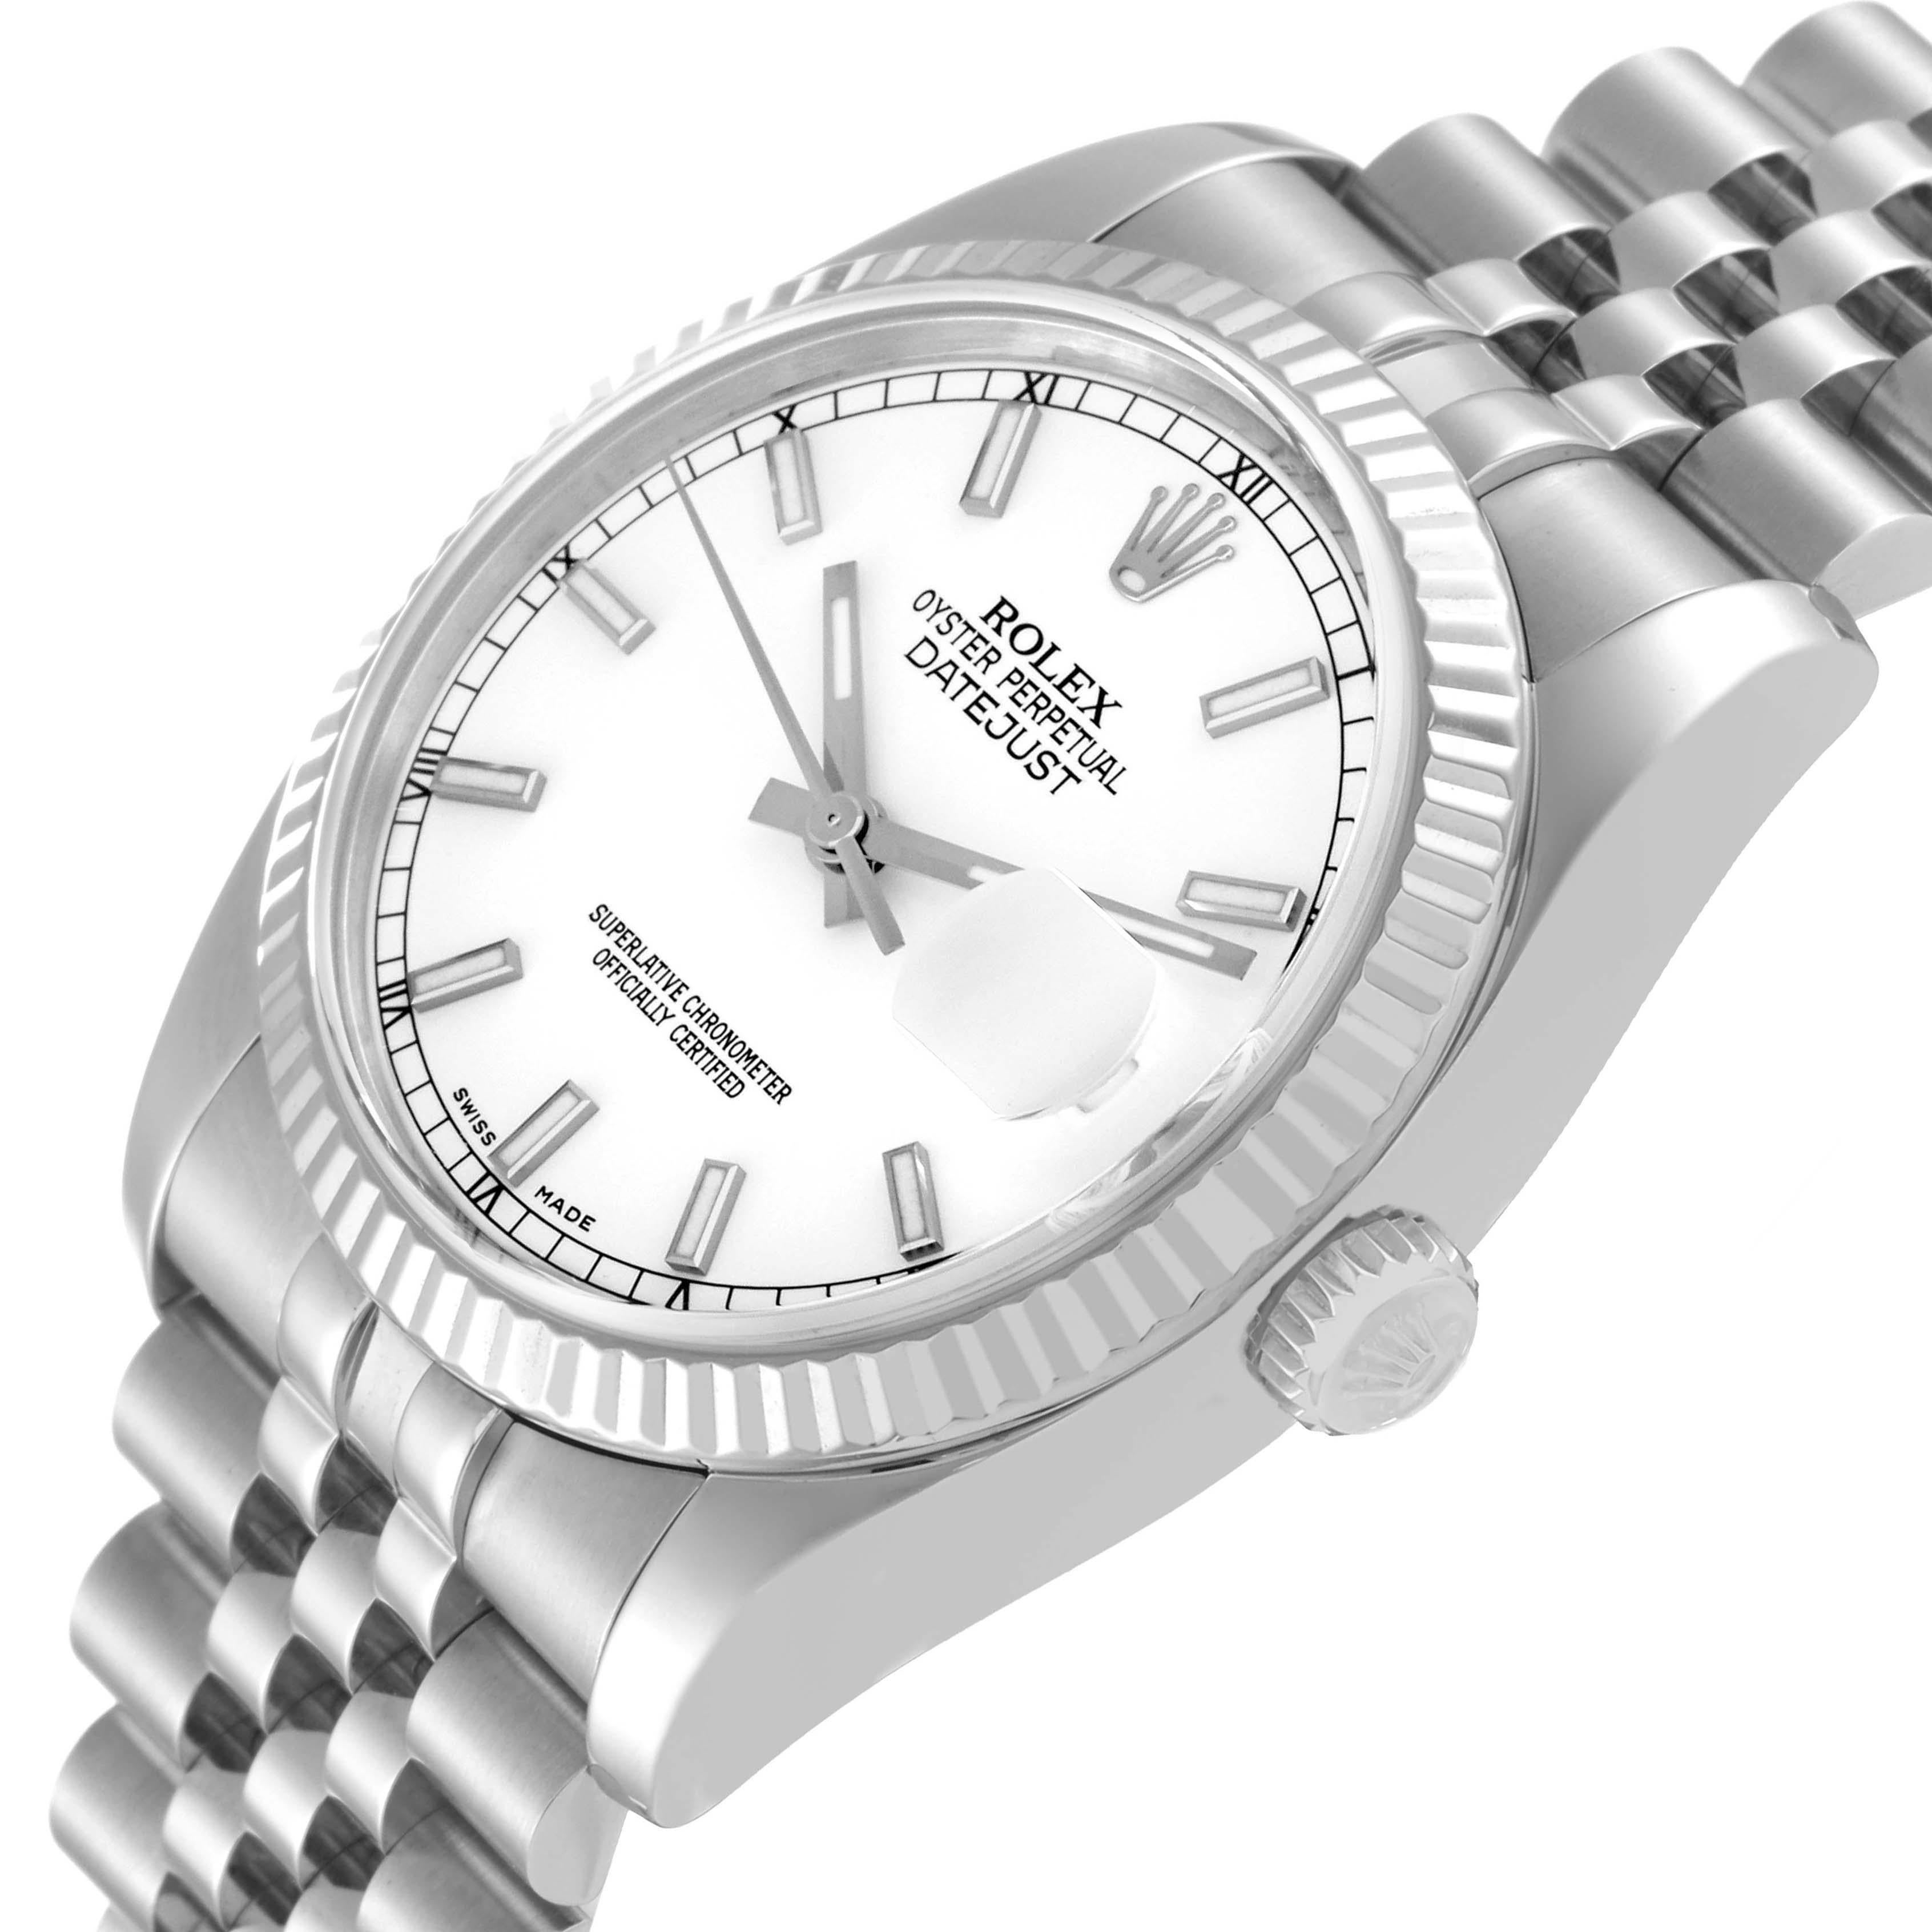 Rolex Datejust Steel White Gold Jubilee Bracelet Watch 116234 1